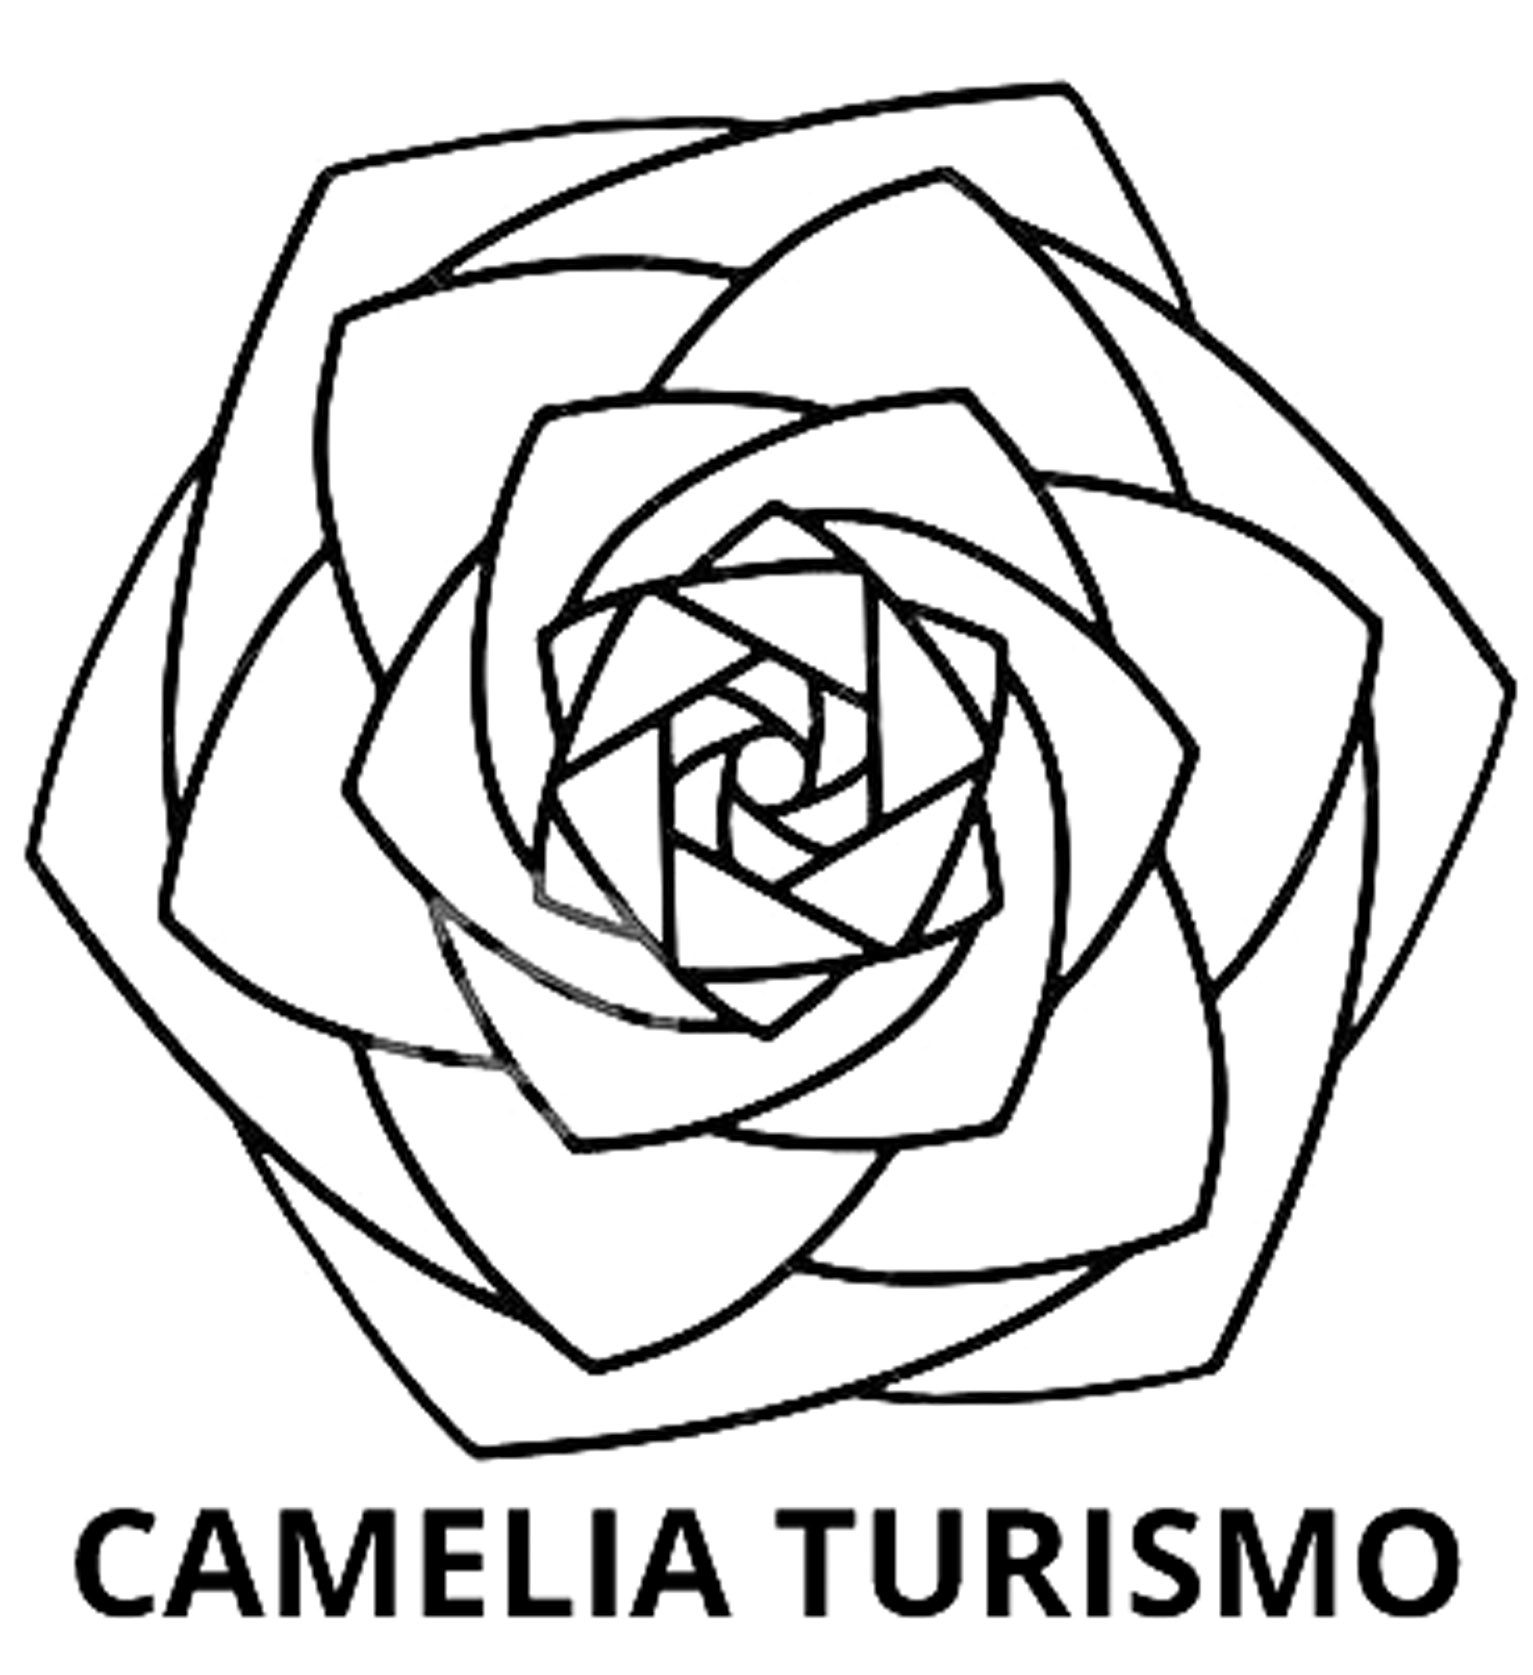 CAMELIA TURISMO